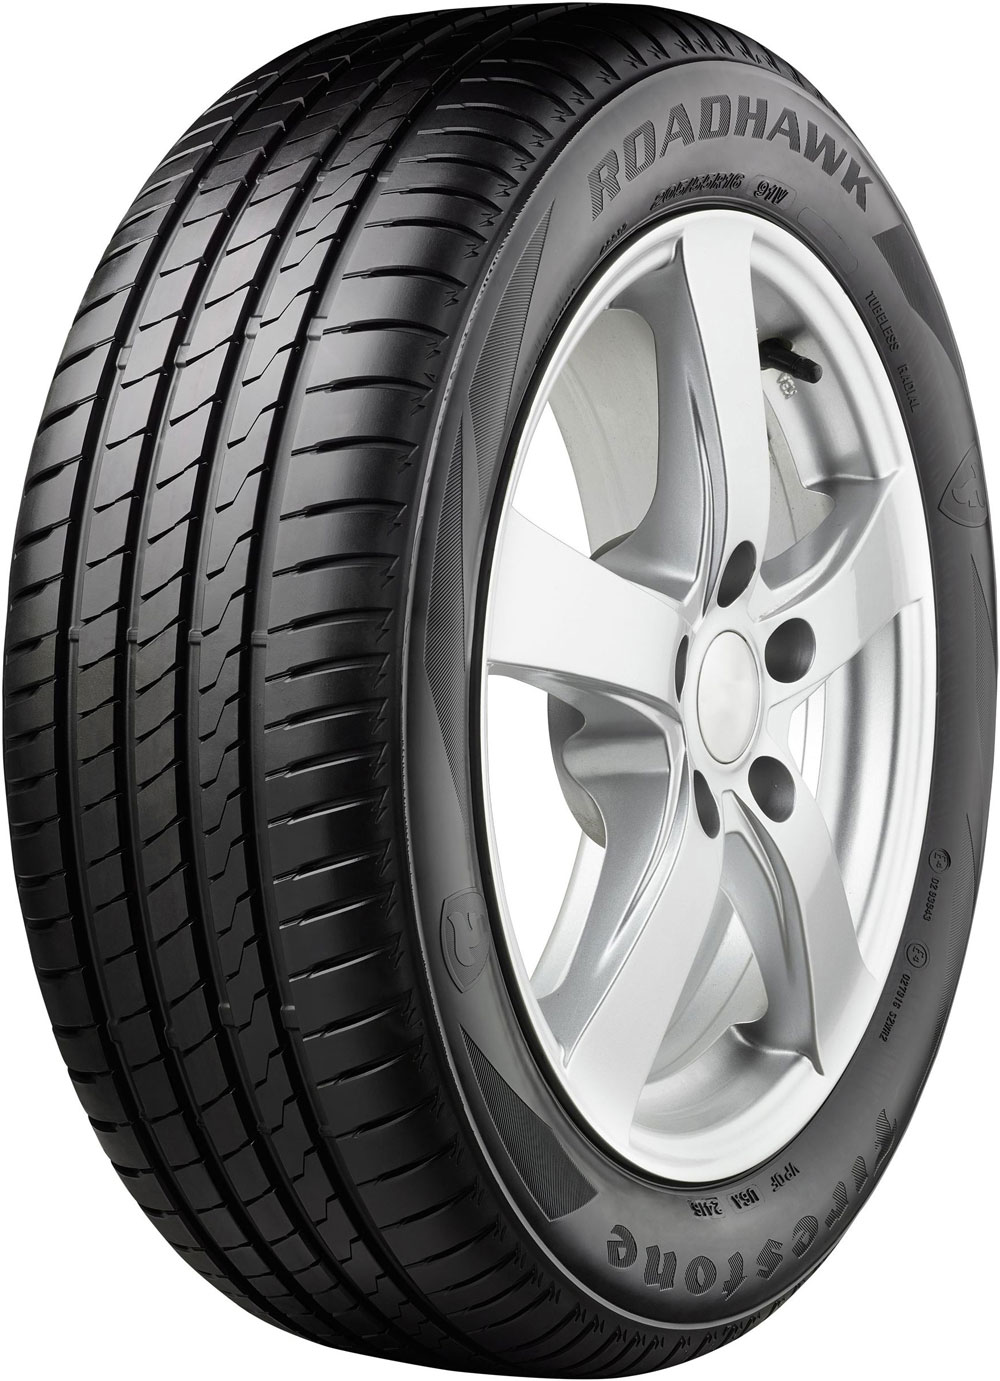 Автомобилни гуми FIRESTONE ROADHAWK XL XL 205/50 R17 93W